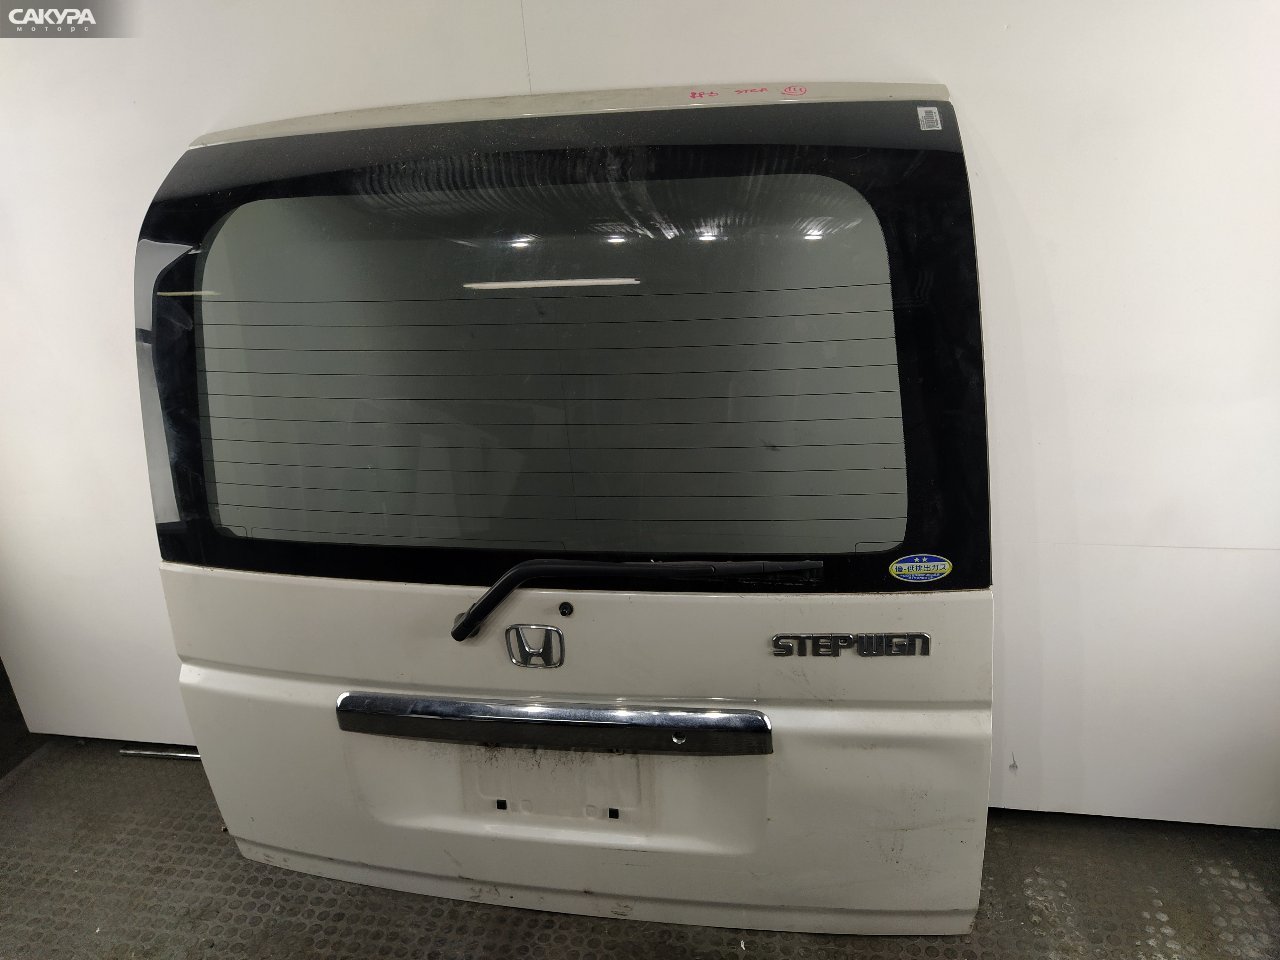 Дверь задняя багажника Honda Stepwgn RF3 K20A: купить в Сакура Красноярск.